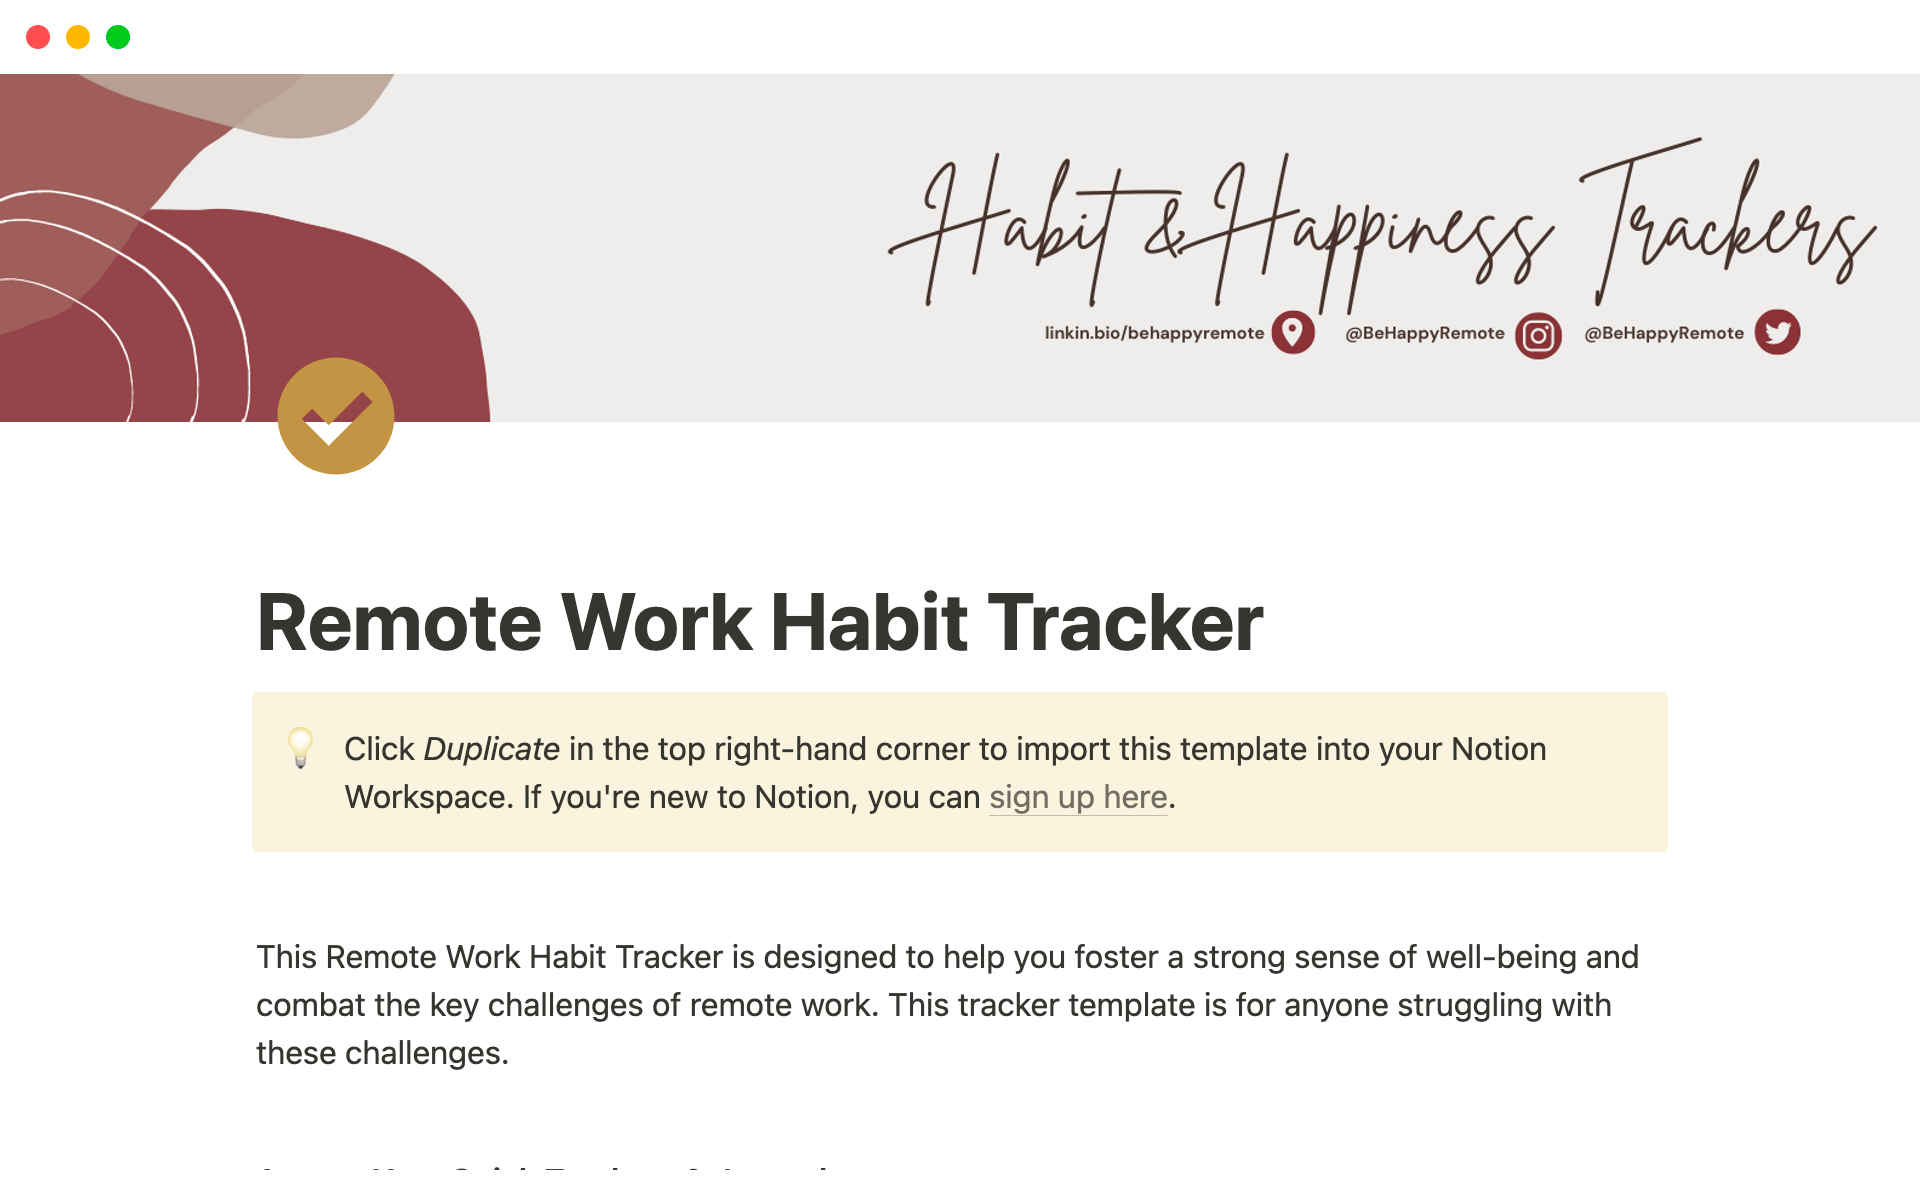 Remote Work Habit & Happiness Tracker님의 템플릿 미리보기